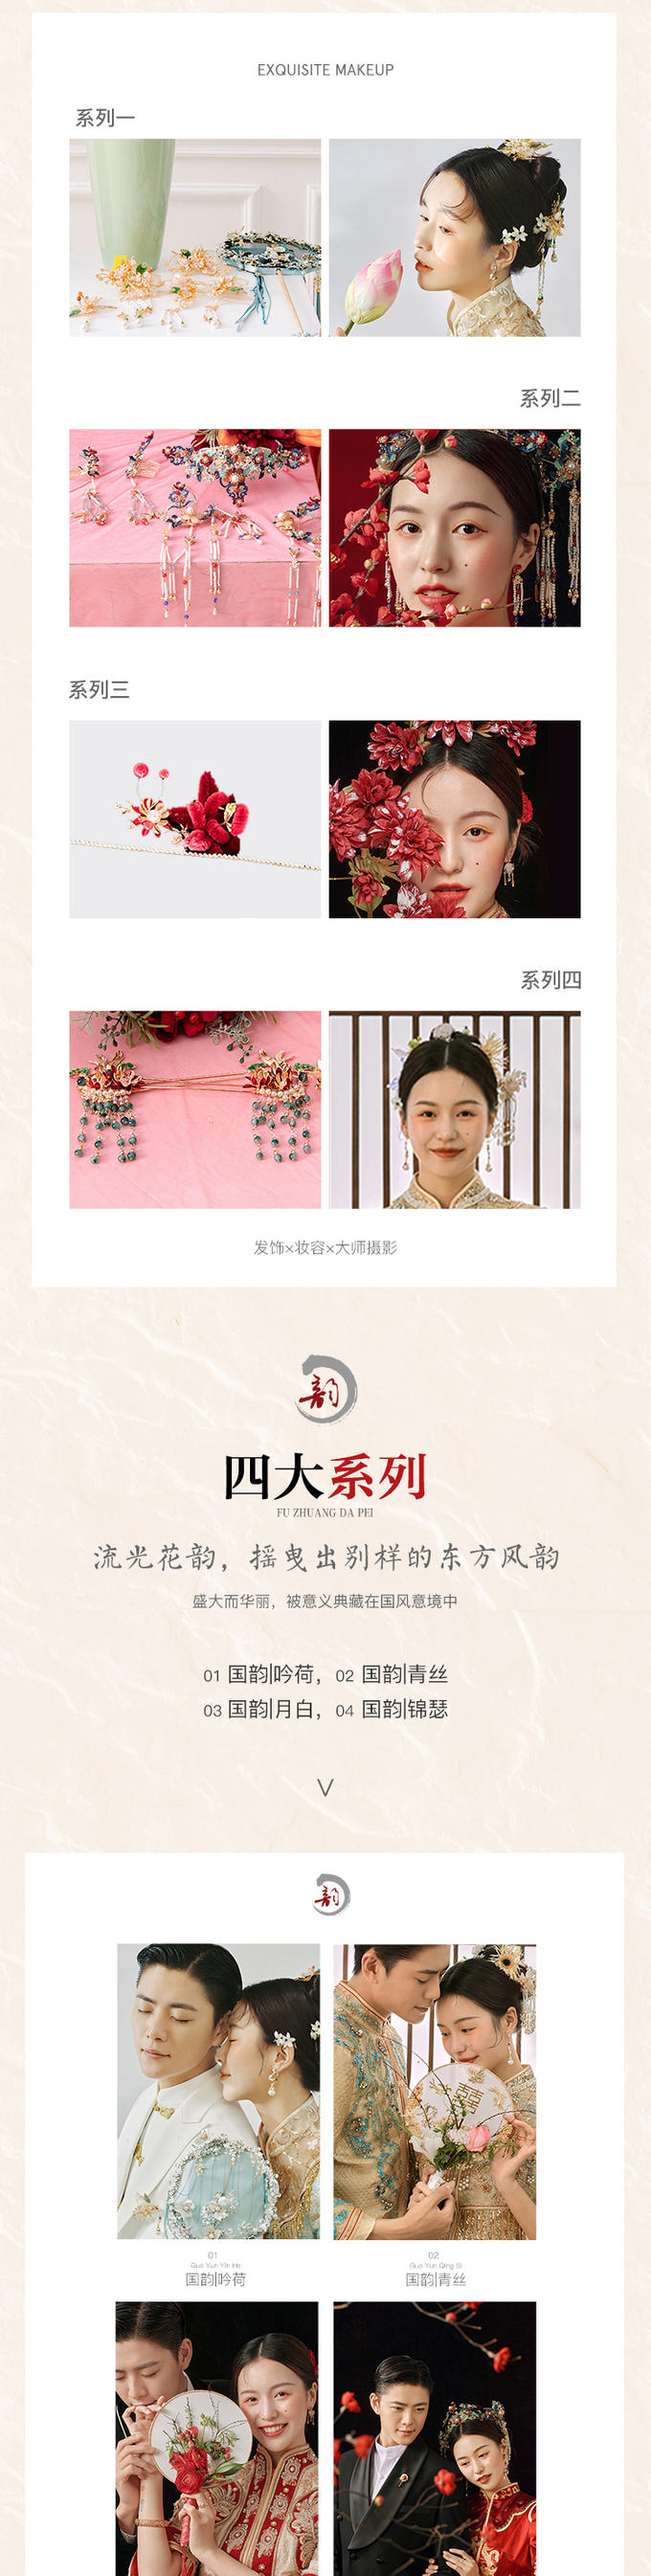 【传承经典】中式园林系列·实景拍摄婚纱照